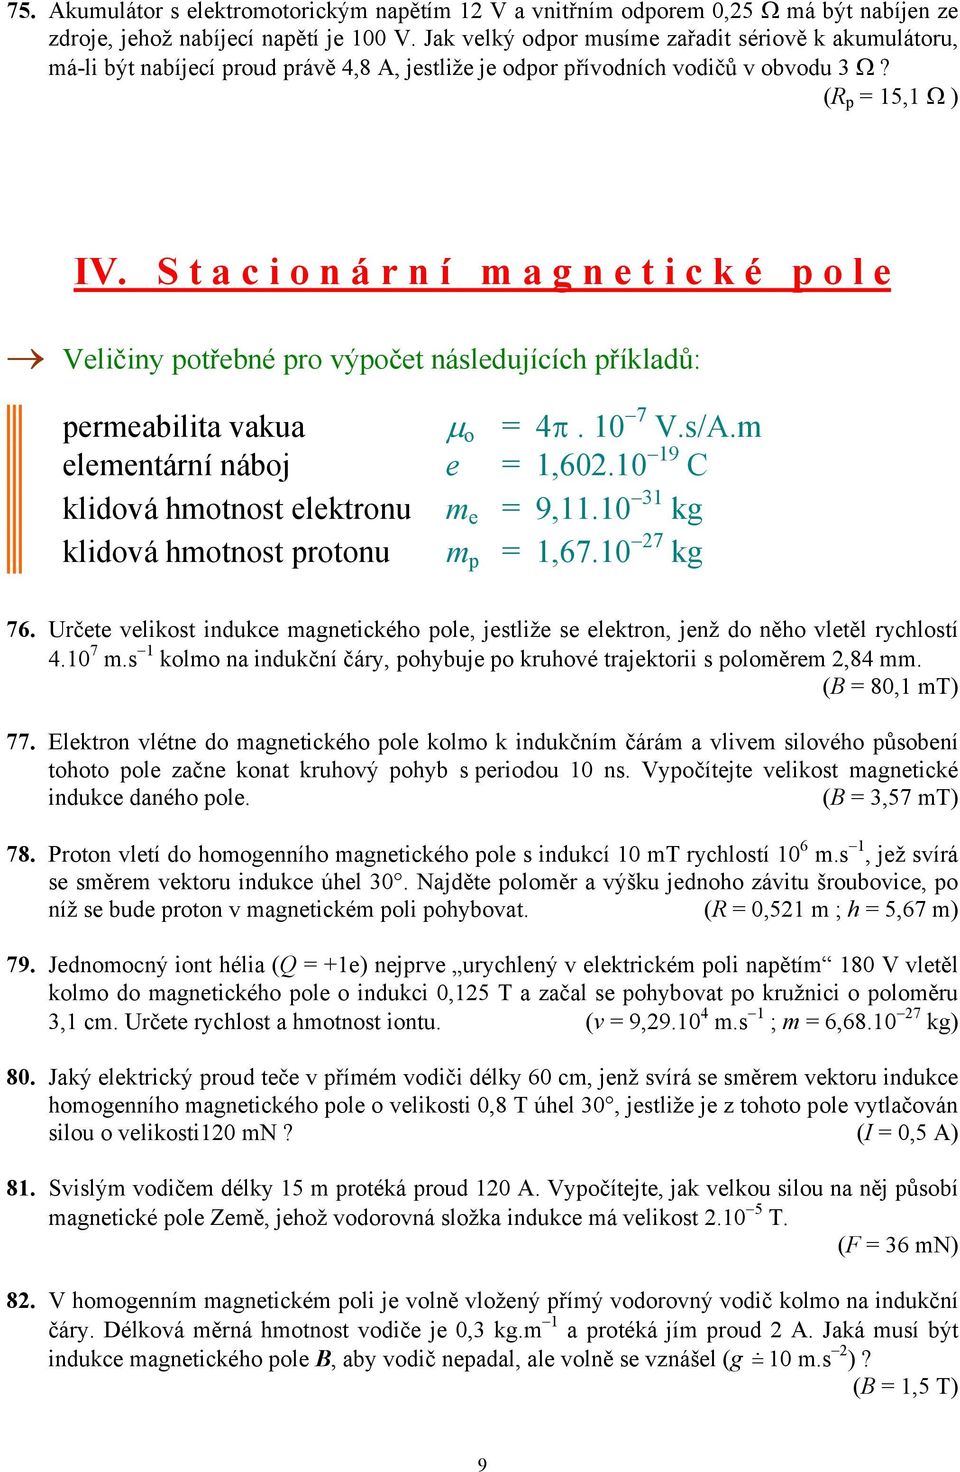 (R p = 15,1 Ω ) IV S t a c i o n á r n í m a g n e t i c k é p o l e Veličiny potřebné pro výpočet následujících příkladů: permeabilita vakua µ o = 4π 10 7 Vs/Am elementární náboj e = 1,60210 19 C